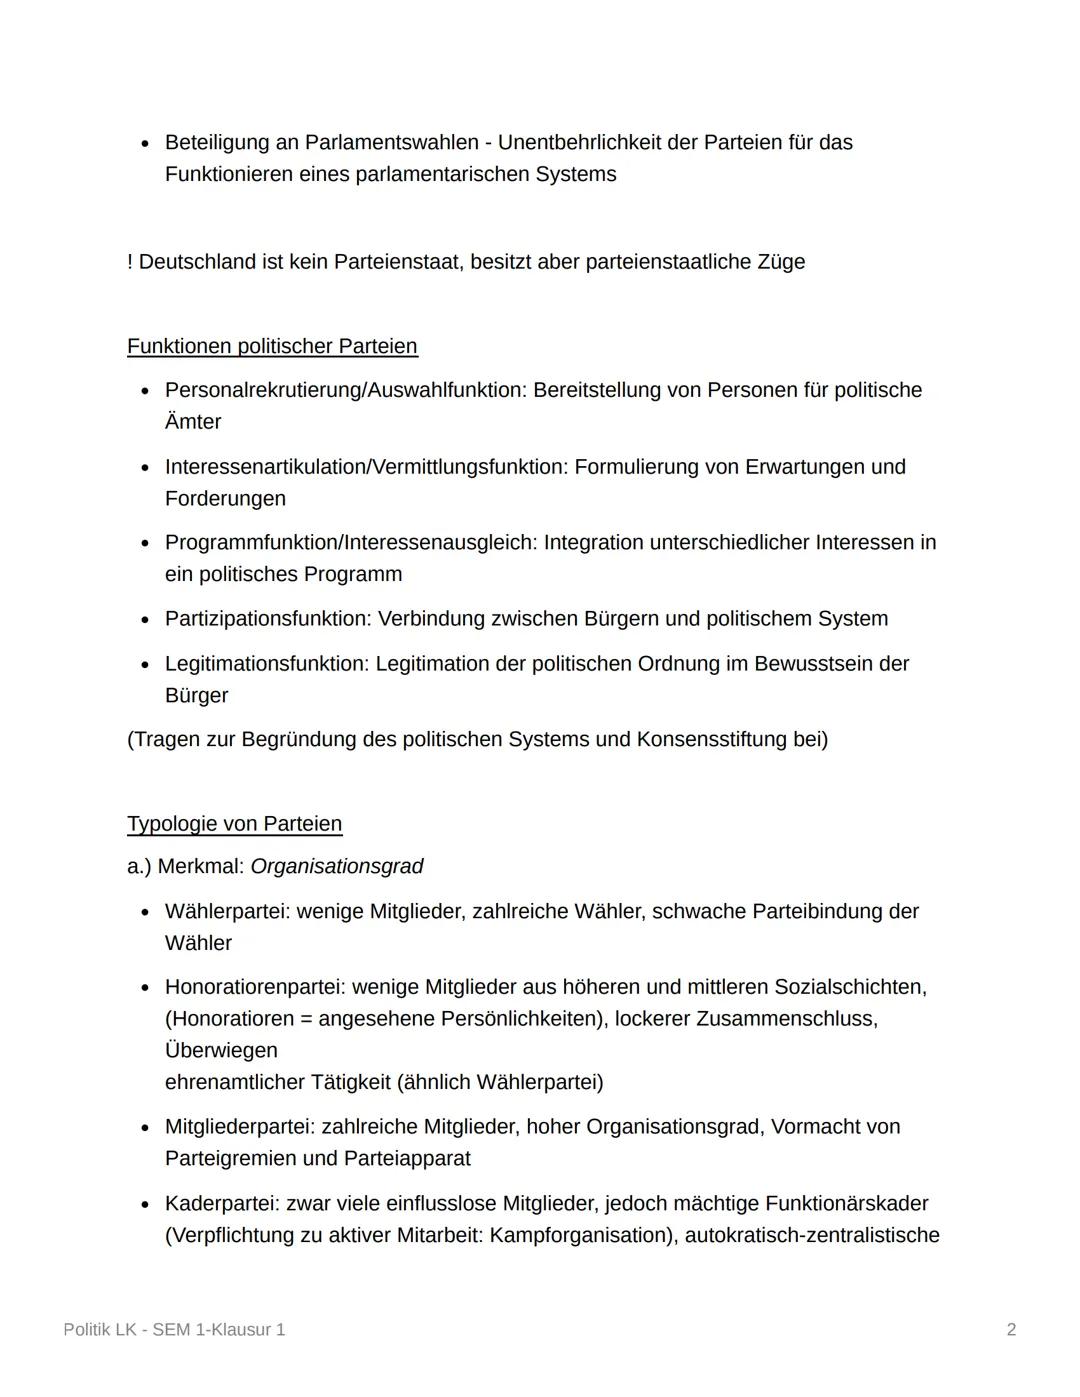 Politik LK - SEM 1-Klausur 1
Politische Partizipation und Parteien
Parteienbegriff-Definition/Merkmale (DE)
Parteiengesetz (1967):
• Dauerha